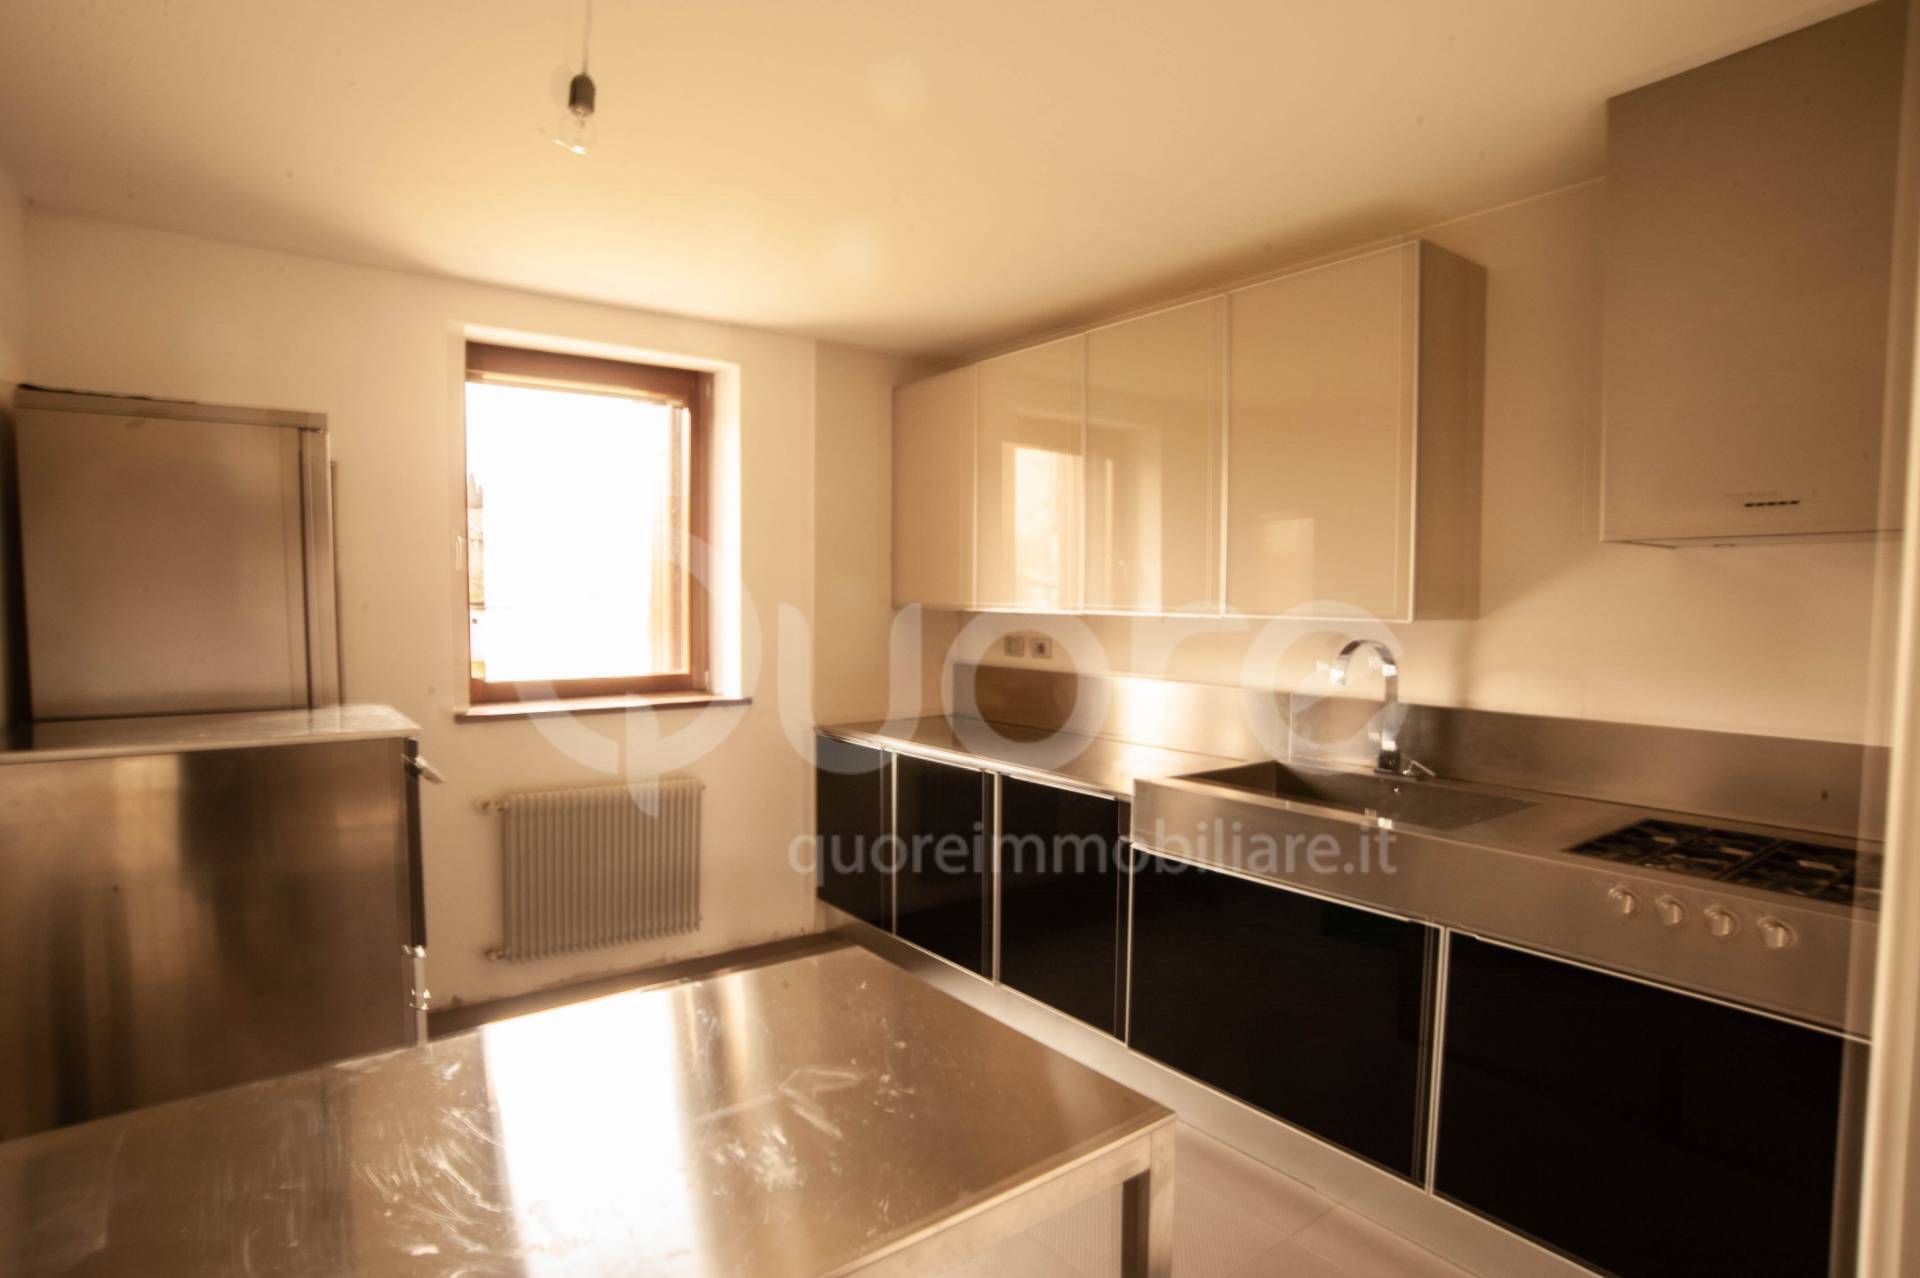 Appartamento in vendita a Fagagna, 5 locali, zona Zona: Villalta, prezzo € 155.000 | CambioCasa.it